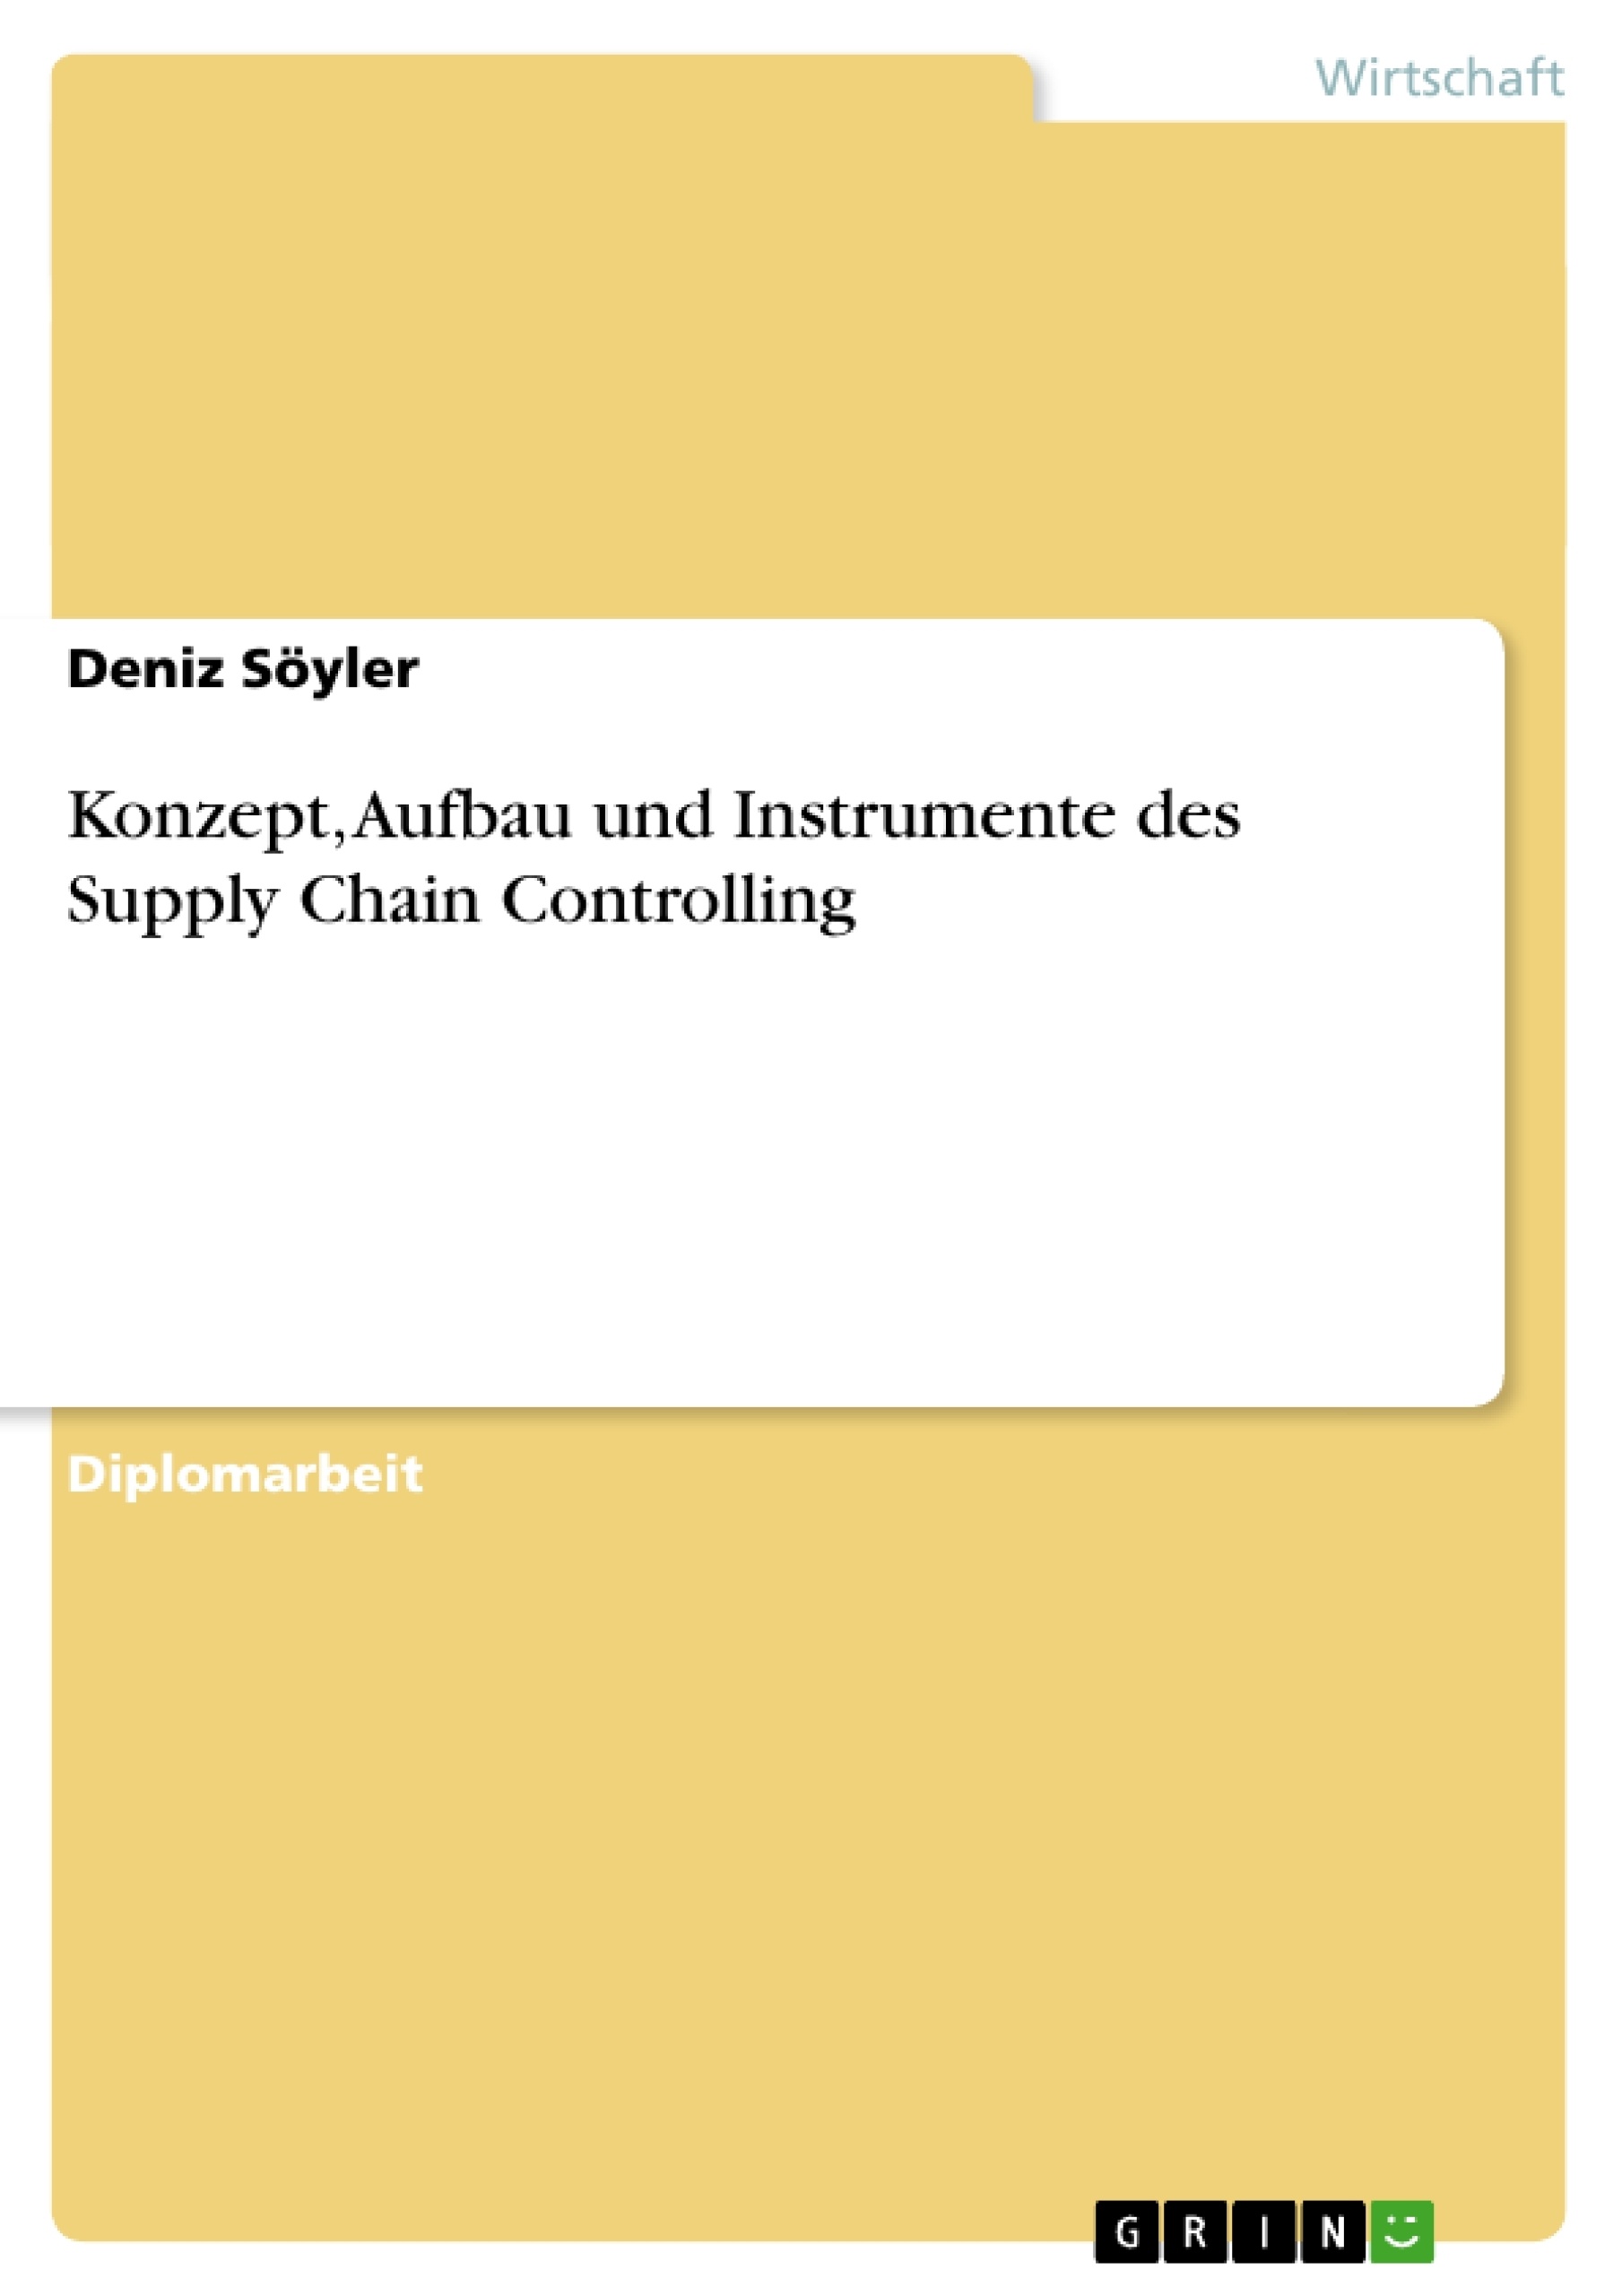 Título: Konzept, Aufbau und Instrumente des Supply Chain Controlling